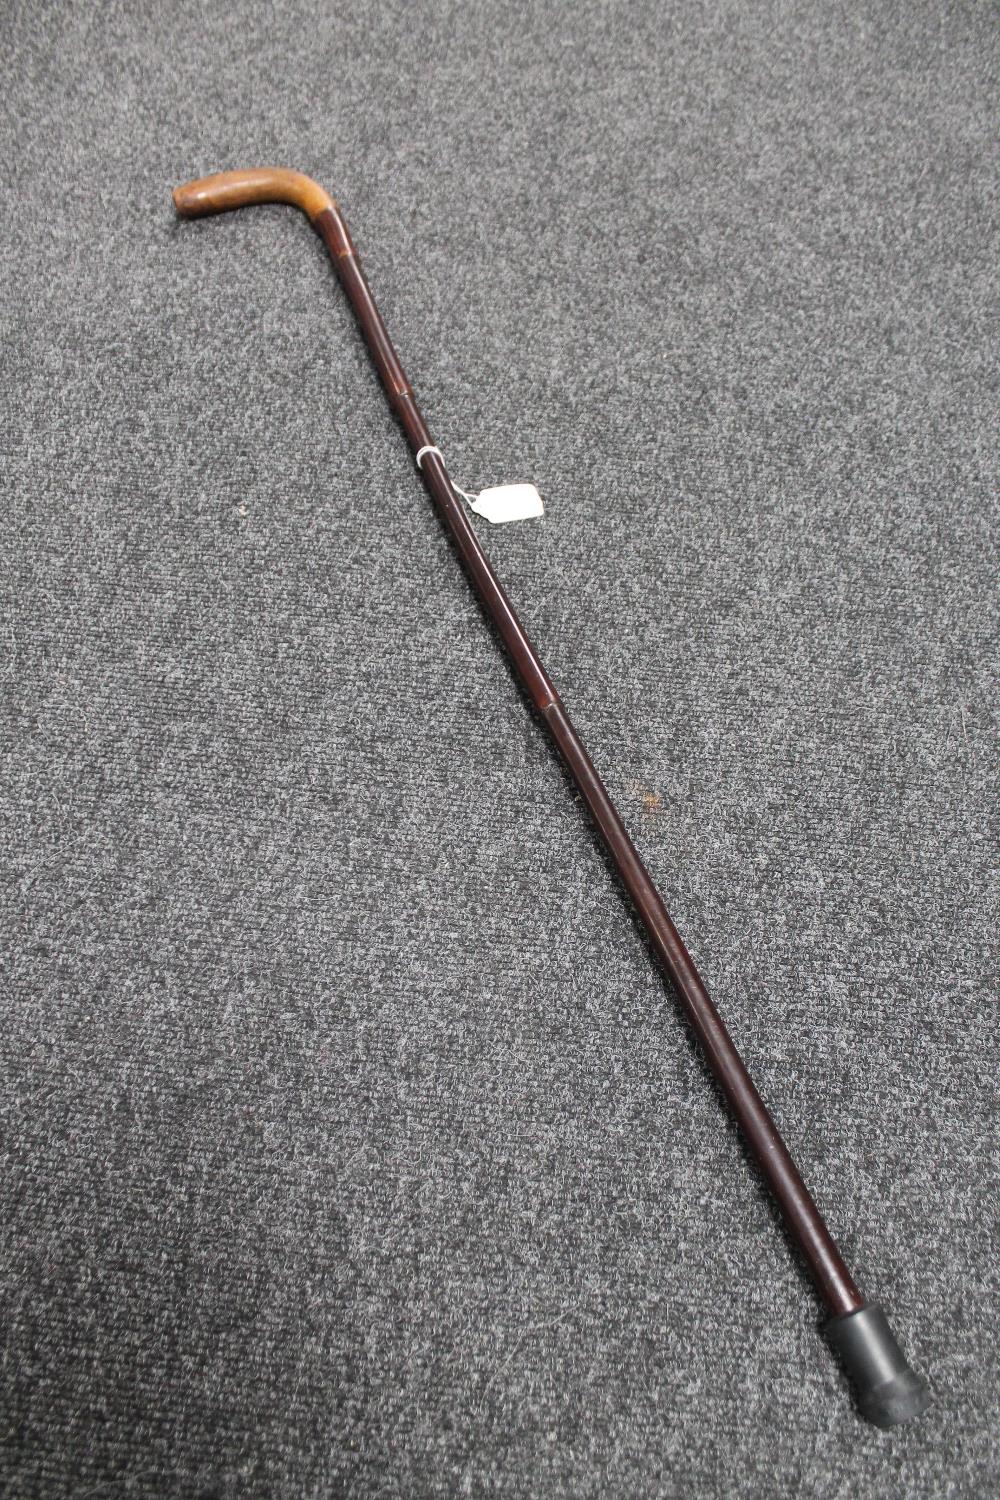 An antique cane 'Sunday' stick with briar head, length 93 cm.